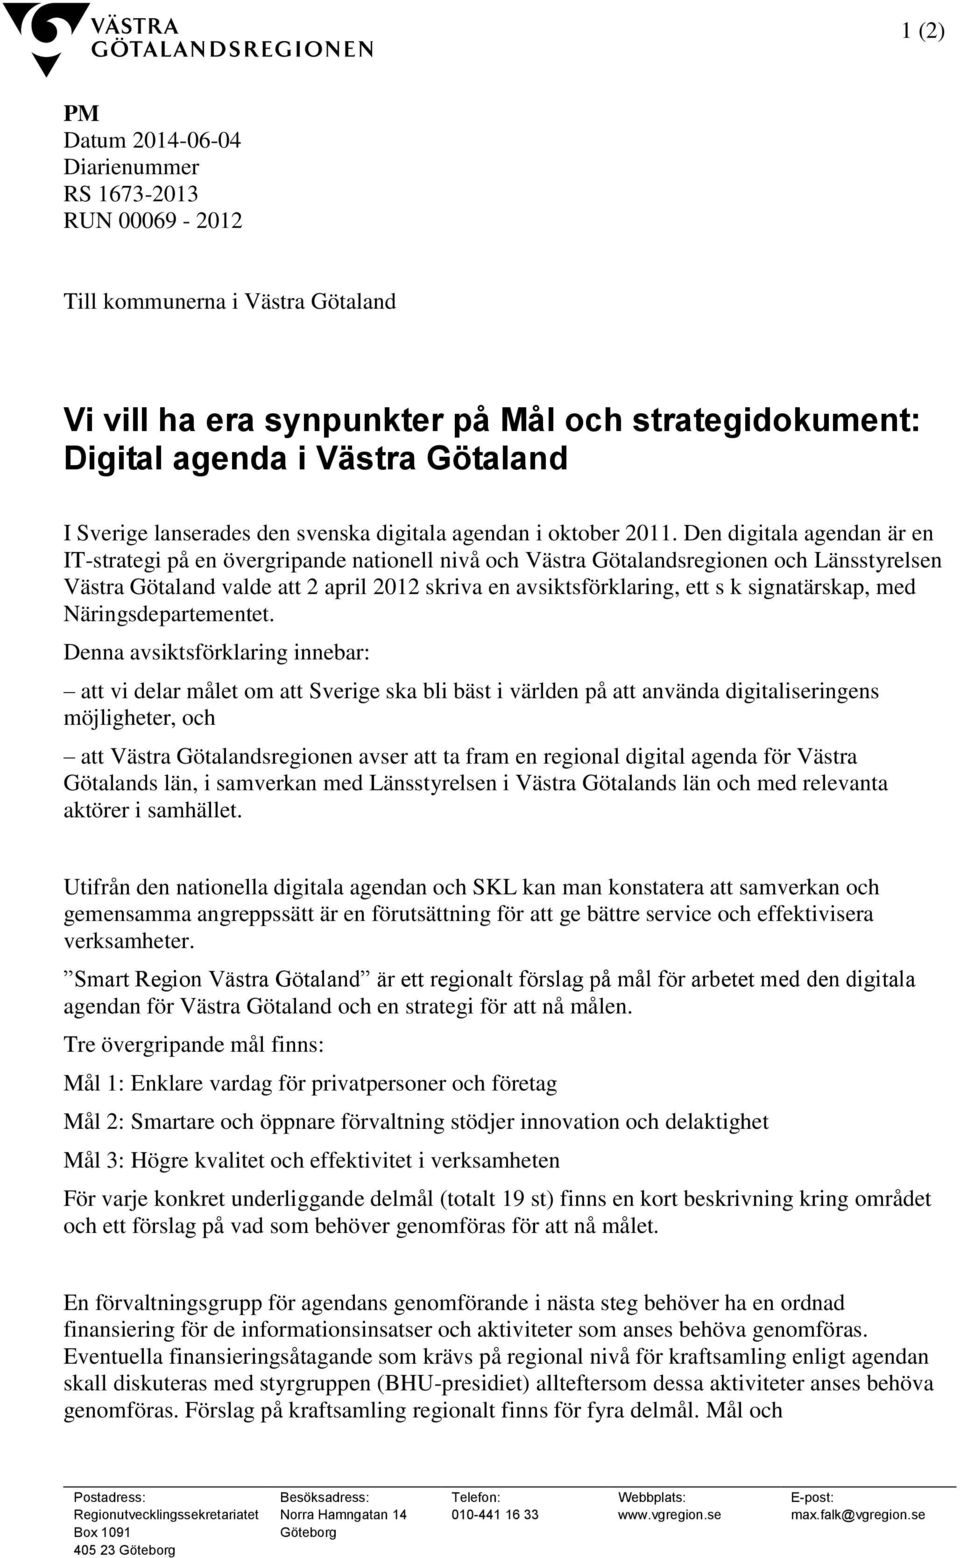 Den digitala agendan är en IT-strategi på en övergripande nationell nivå och Västra Götalandsregionen och Länsstyrelsen Västra Götaland valde att 2 april 2012 skriva en avsiktsförklaring, ett s k